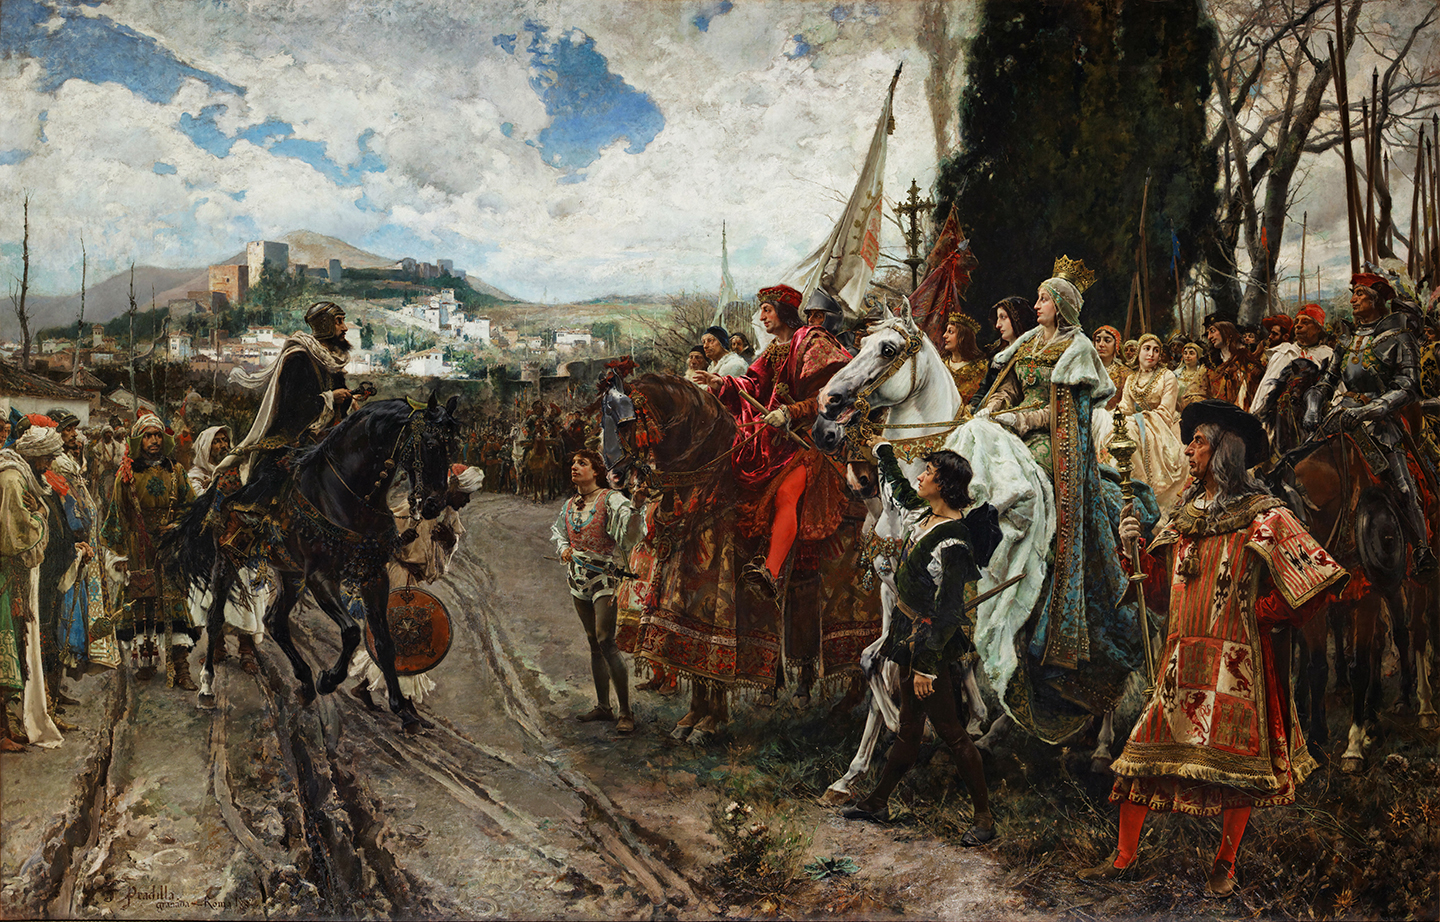 Tác phẩm “The Capitulation of Granada” (Sự đầu hàng của vương quốc Granada) của hoạ sĩ Francisco Pradilla y Ortiz, vẽ vào năm 1882. Sơn dầu trên vải canvas. Cung điện Thượng viện, thành phố Madrid. (Ảnh: Tư liệu công cộng)